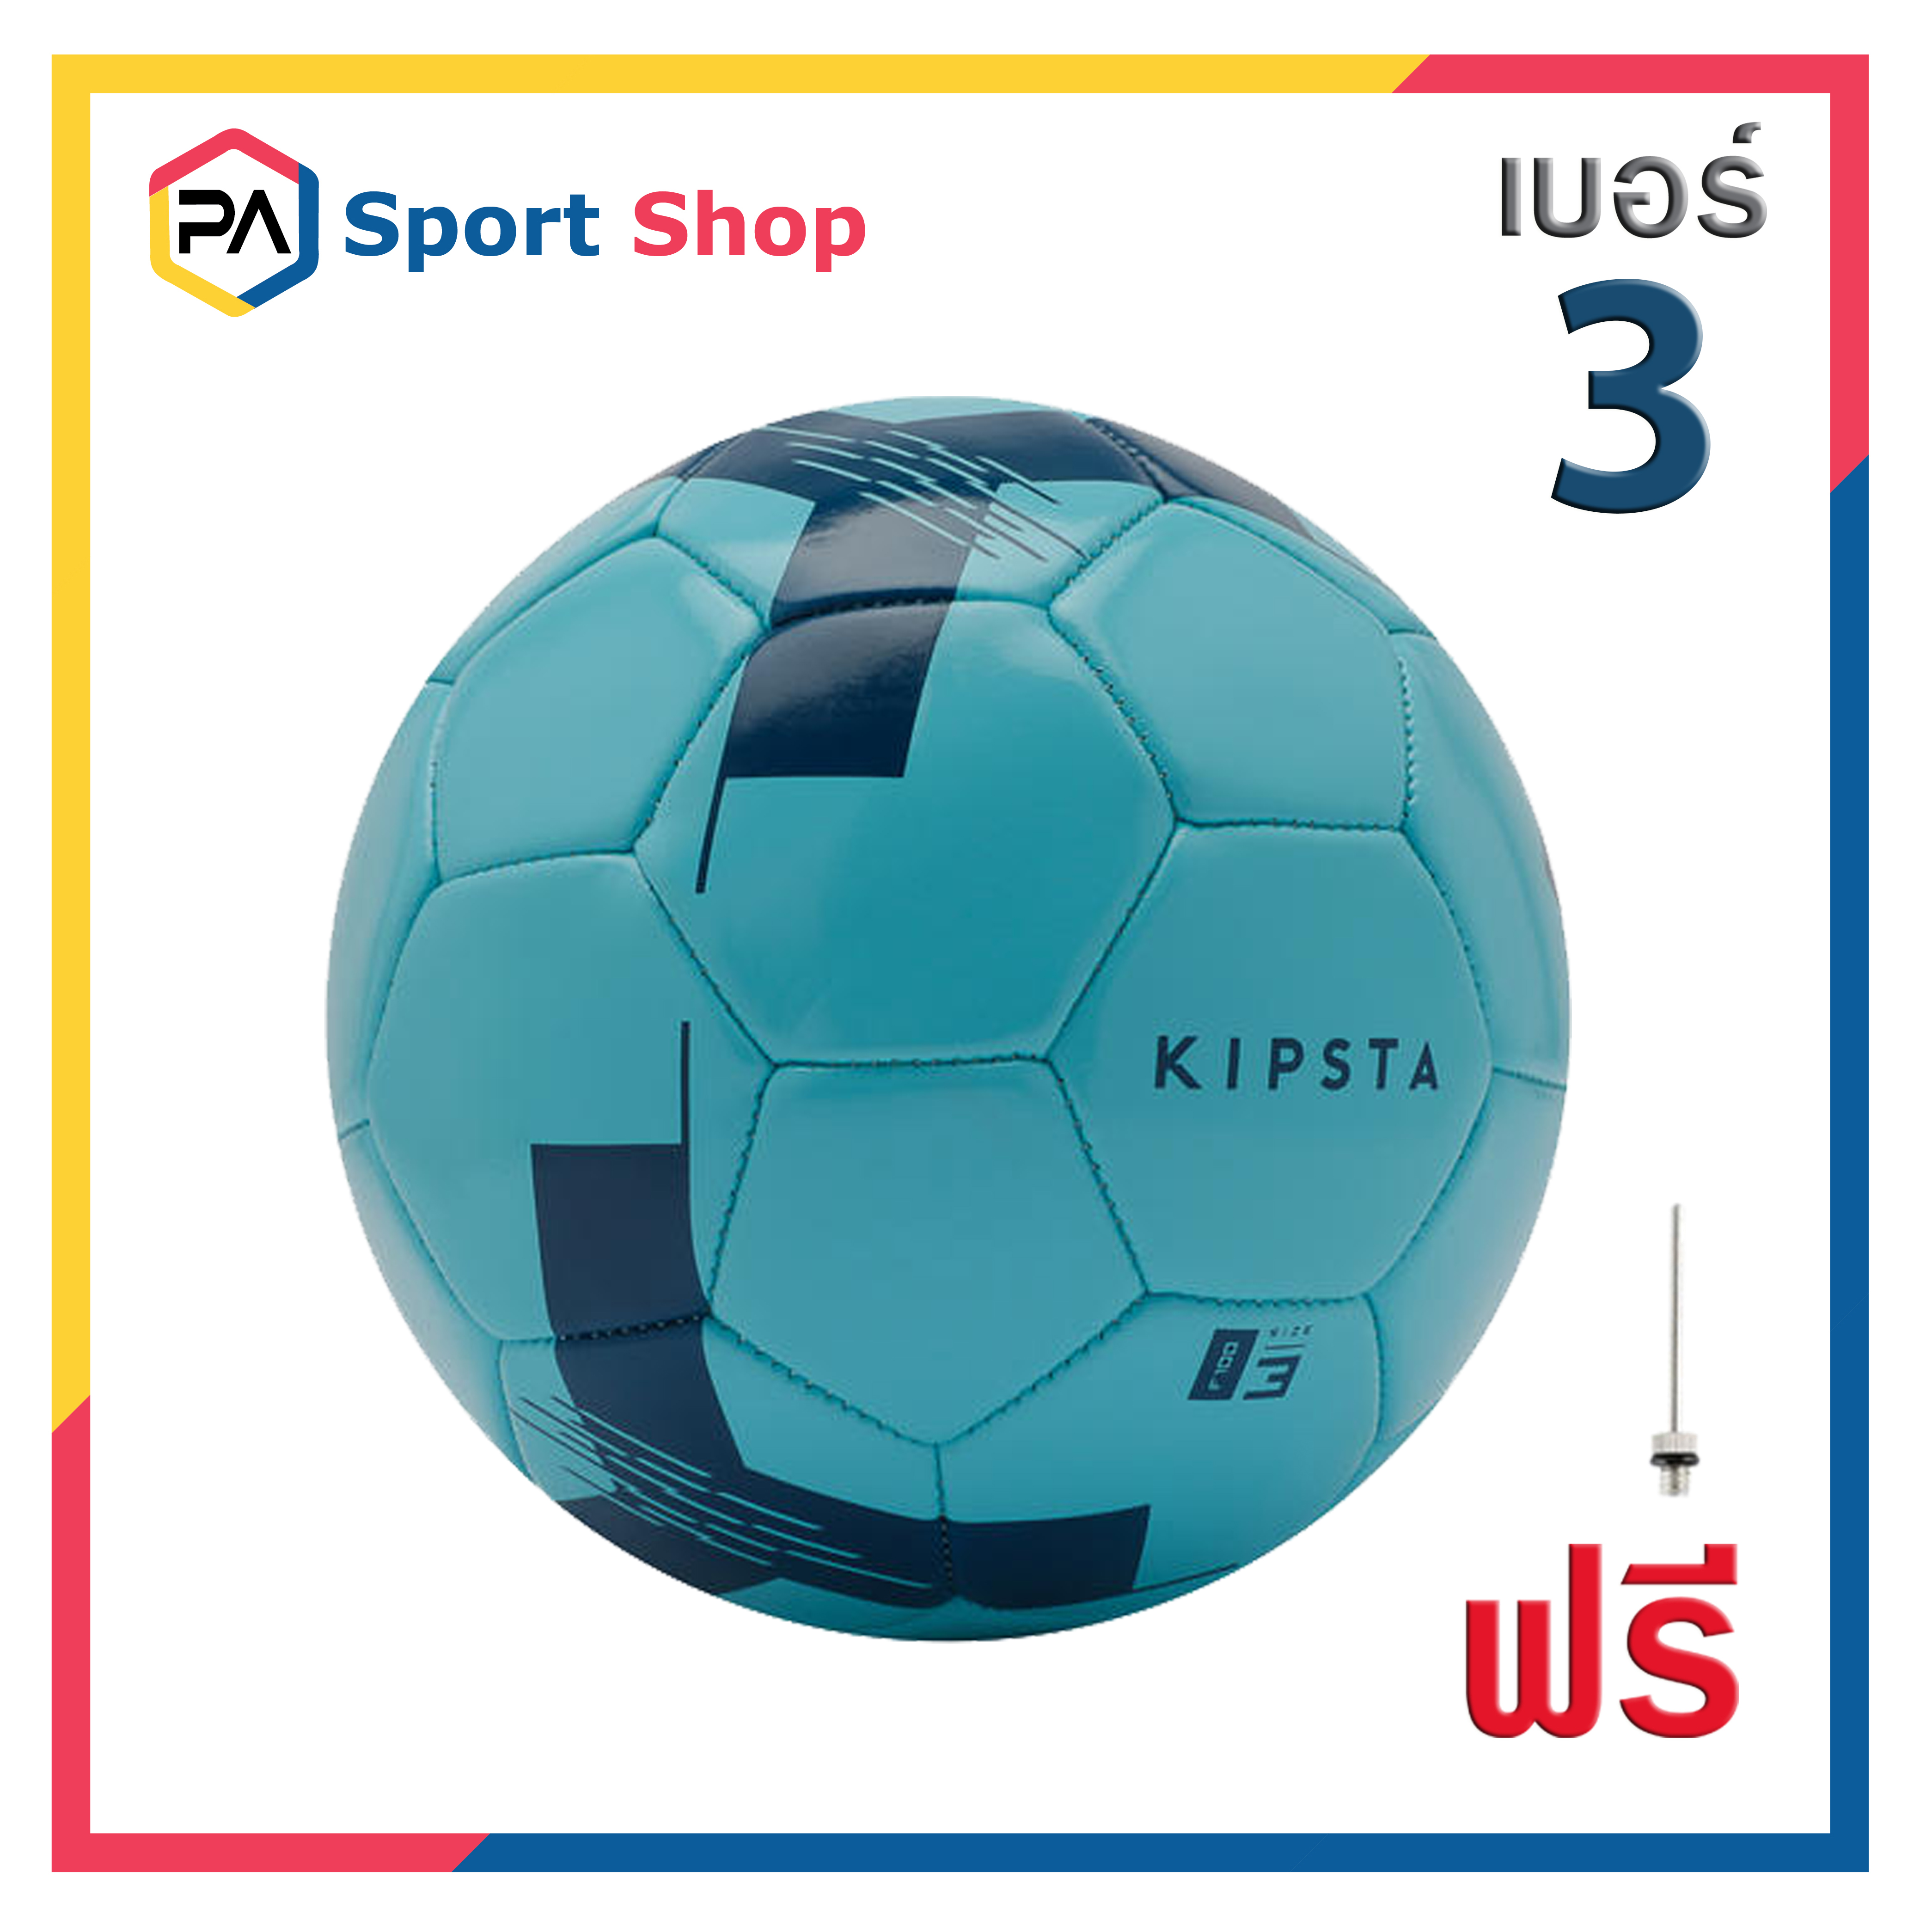 ลูกฟุตบอล ลูกบอล เบอร์ 5, 4, 3 ยี่ห้อ KIPSTA หนังเย็บ PVC สินค้าแท้ 100% Football Soccer Ball Size 5, 4, 3 เล่นได้ทั้งเด็กและผู้ใหญ่ พร้อมส่งทั่วไทย